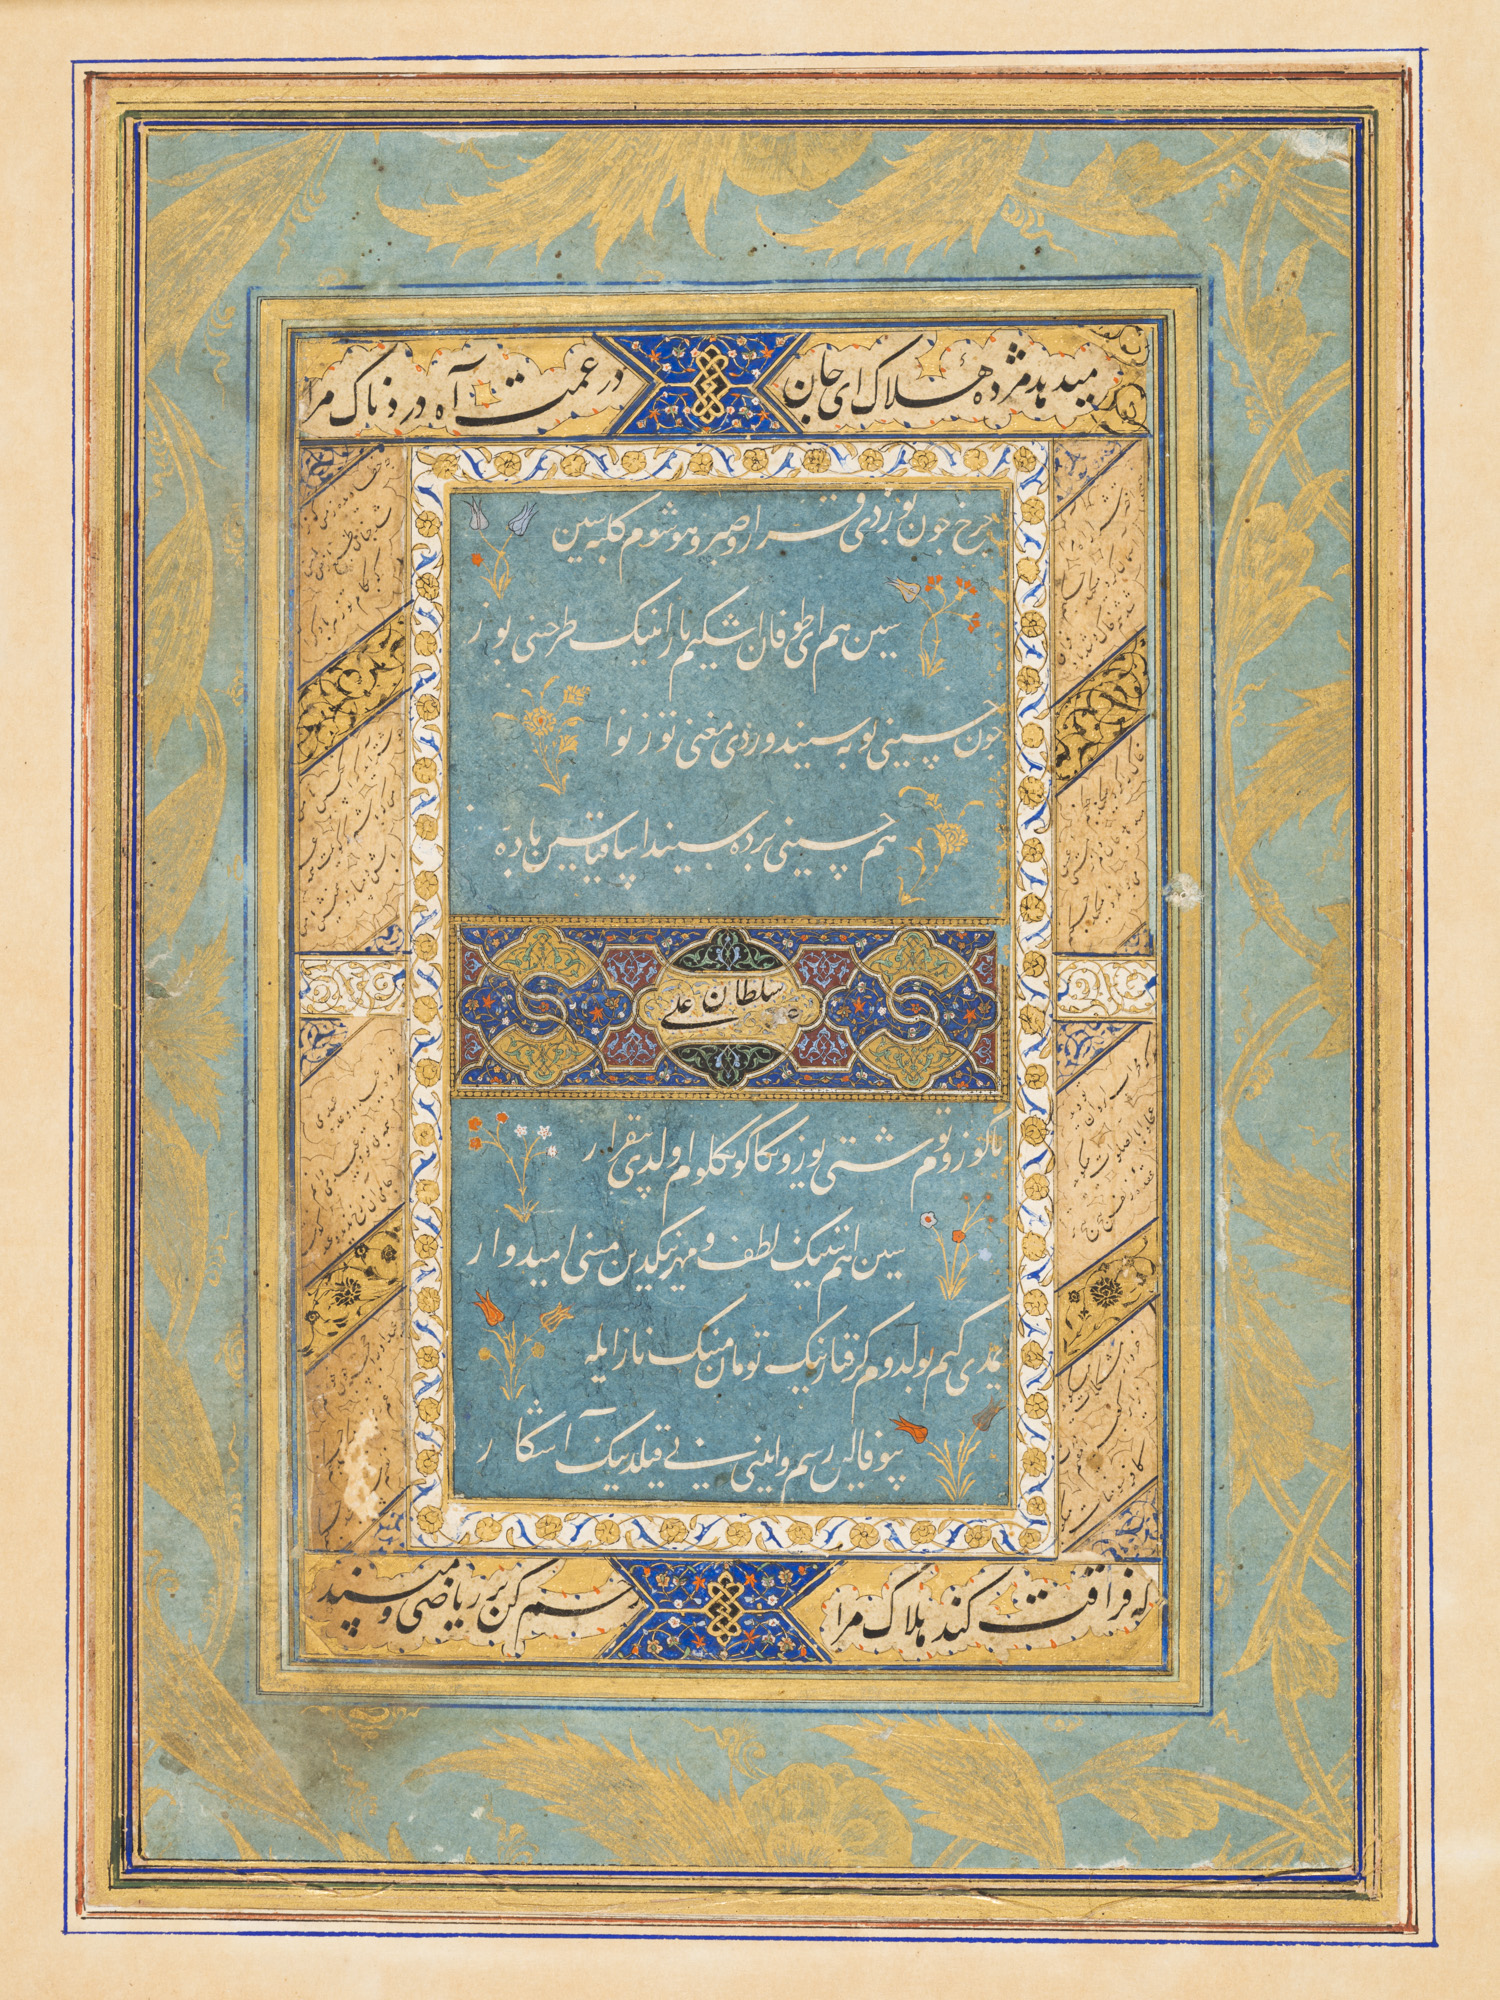 Folio Περιγράφοντας τη θλίψη και την αγωνία που προκαλούνται από τις απρόβλεπτες περιστάσεις της αγάπης: Σελίδα από ένα διάσπαρτο diwan (συλλεγμένα έργα) ποίησης του σουλτάνου Husayn Mirza Bayqara by Σουλτάν Άλι Μασχαντί - περ. 1490 (περίοδος δυναστείας Τιμουριδών) - 15 5/16 in x 11 1/16 in 